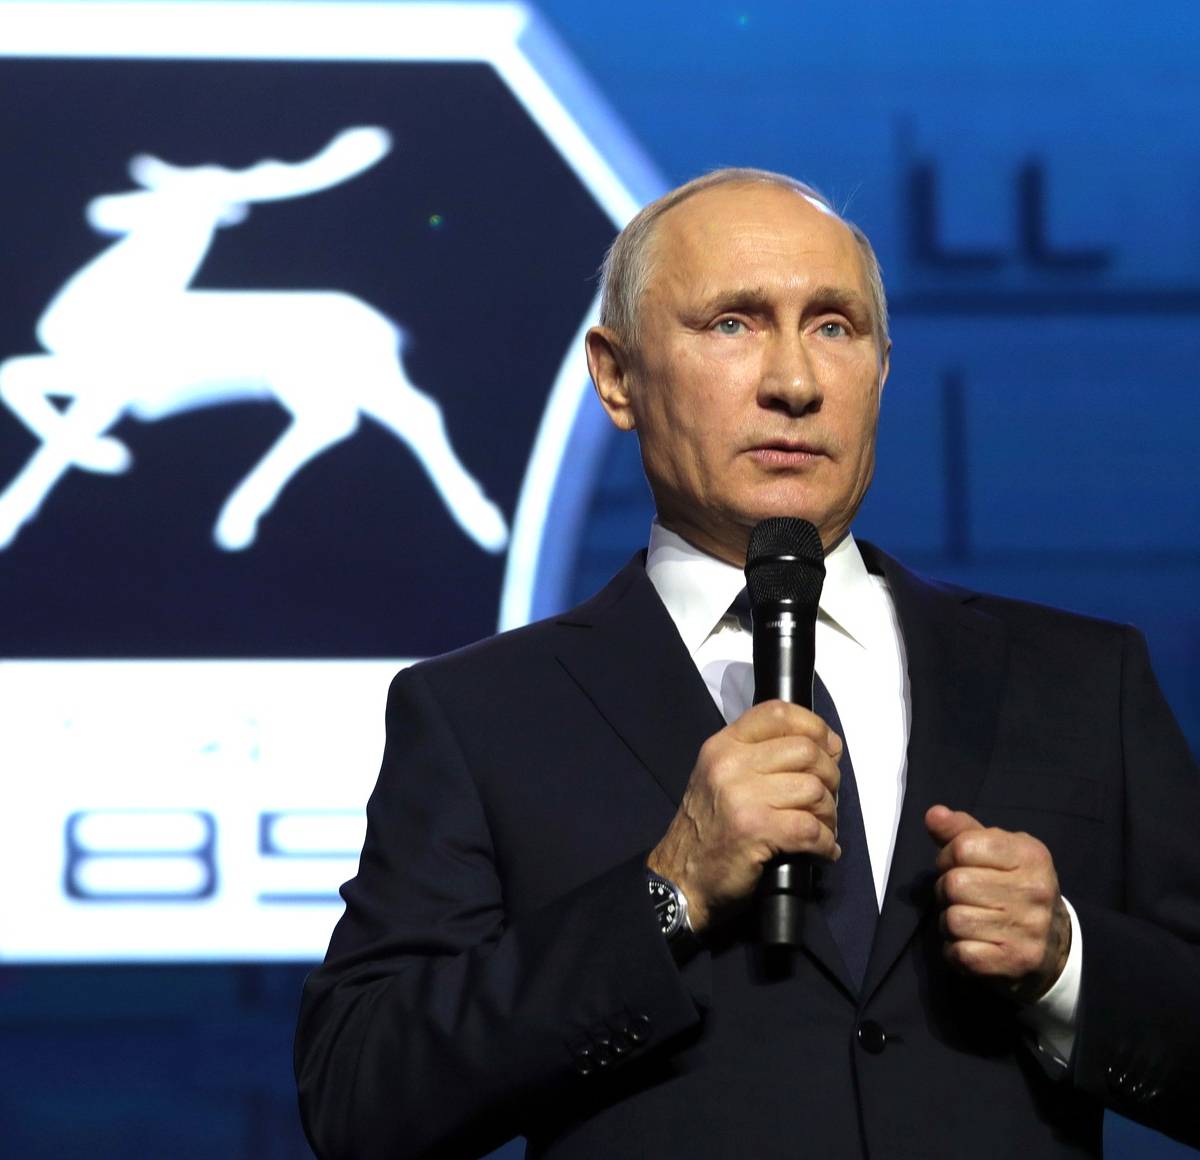 Выдвижение Путина на заводе ГАЗ – прямое обращение к народу, а не к элите